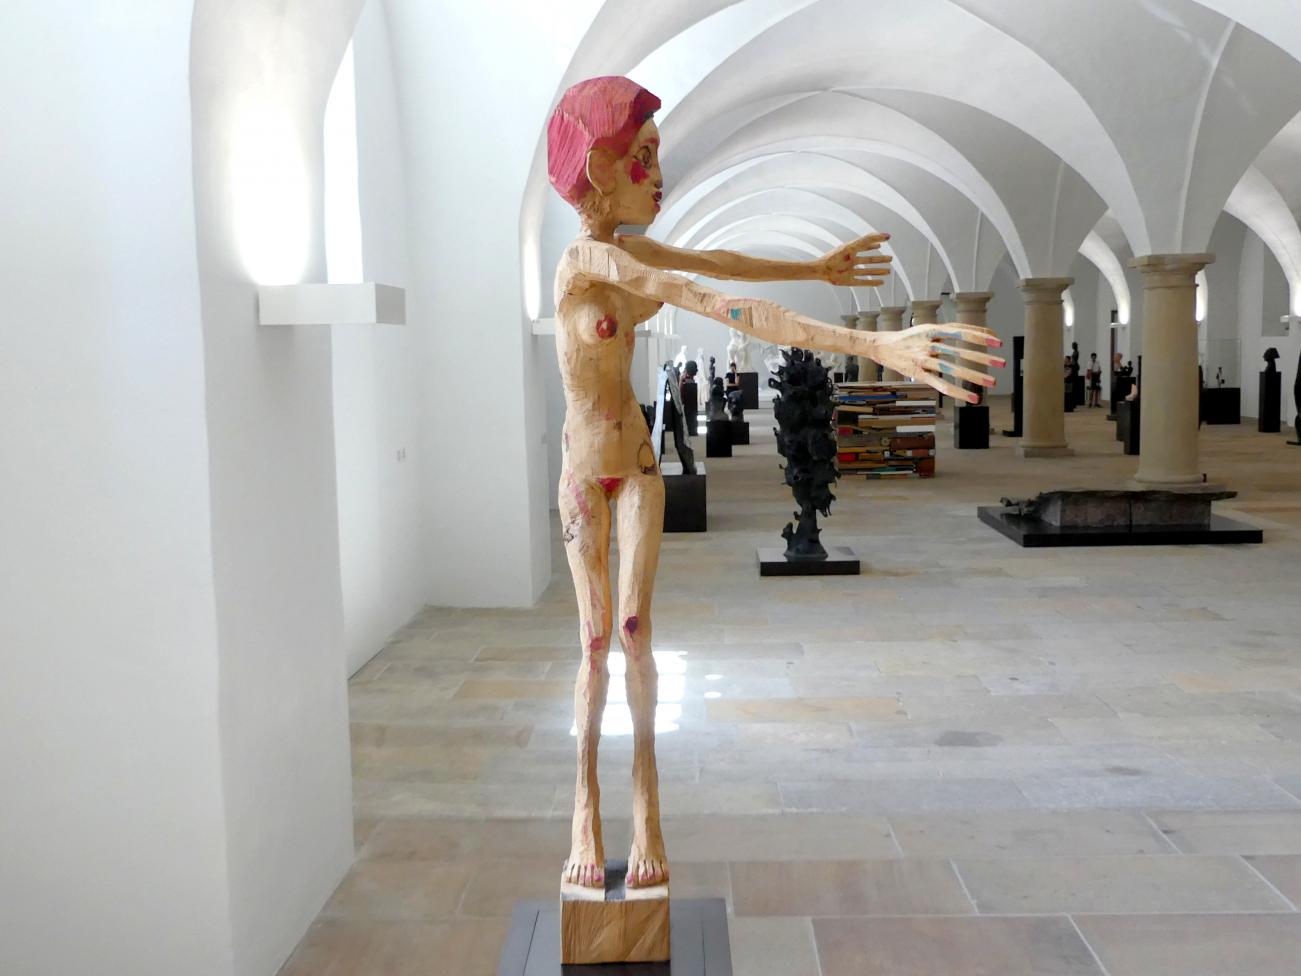 Hans Scheib (1997), Mit offenen Armen, Dresden, Albertinum, Galerie Neue Meister, Erdgeschoss, Skulpturenhalle, 1997, Bild 4/7